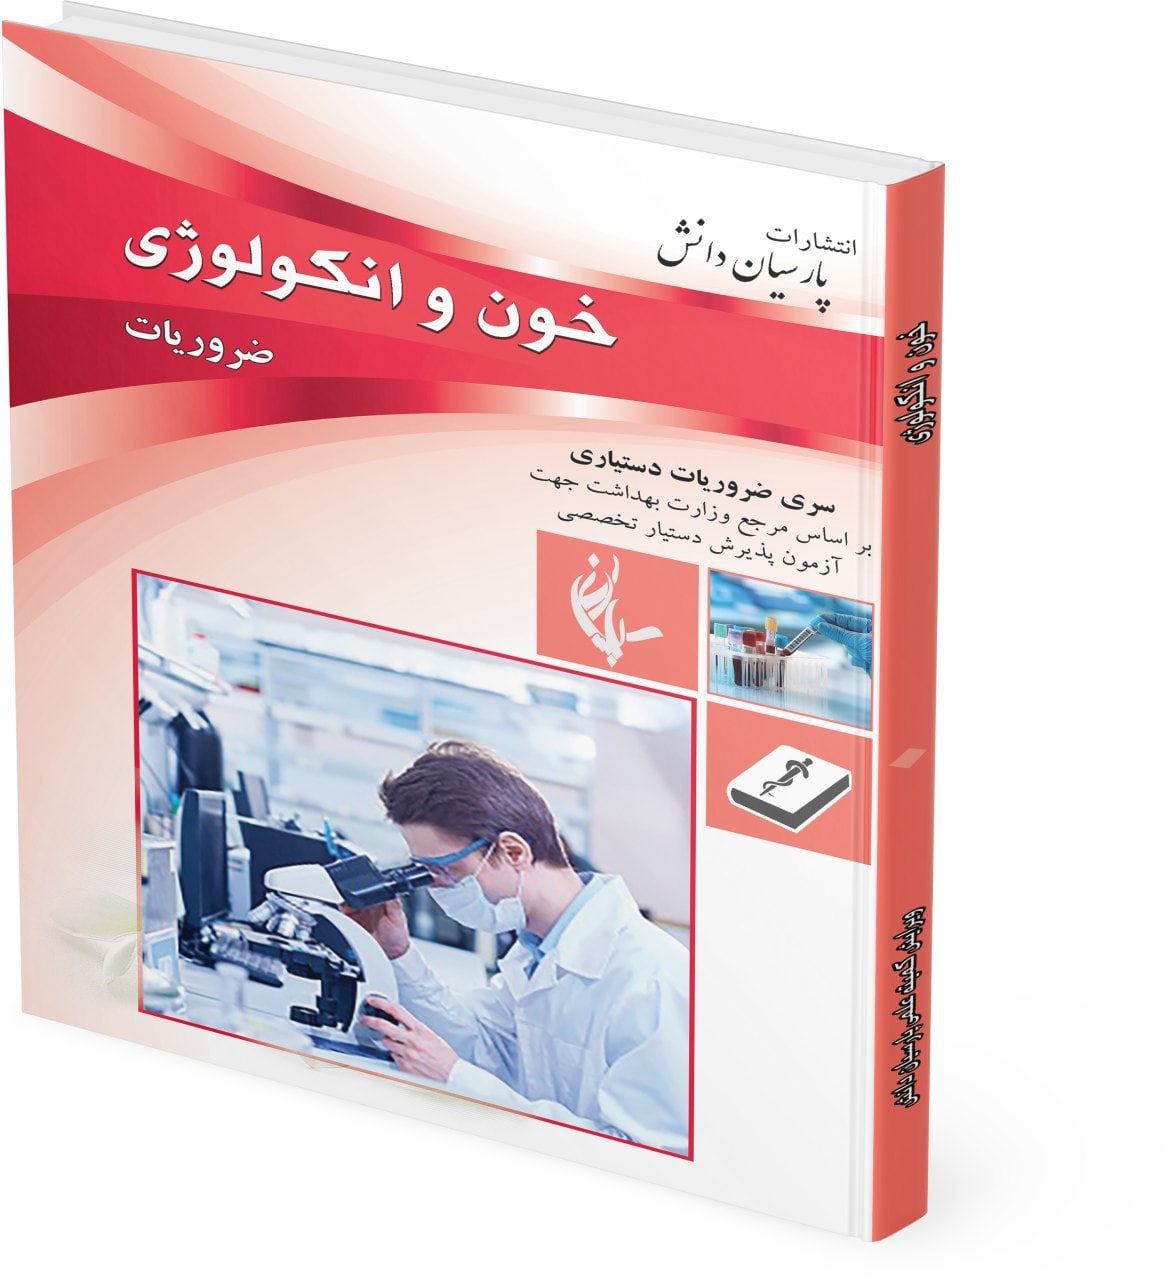 طراحی جلد کتاب ضروریات خون و انکولوژی پارسیان دانش